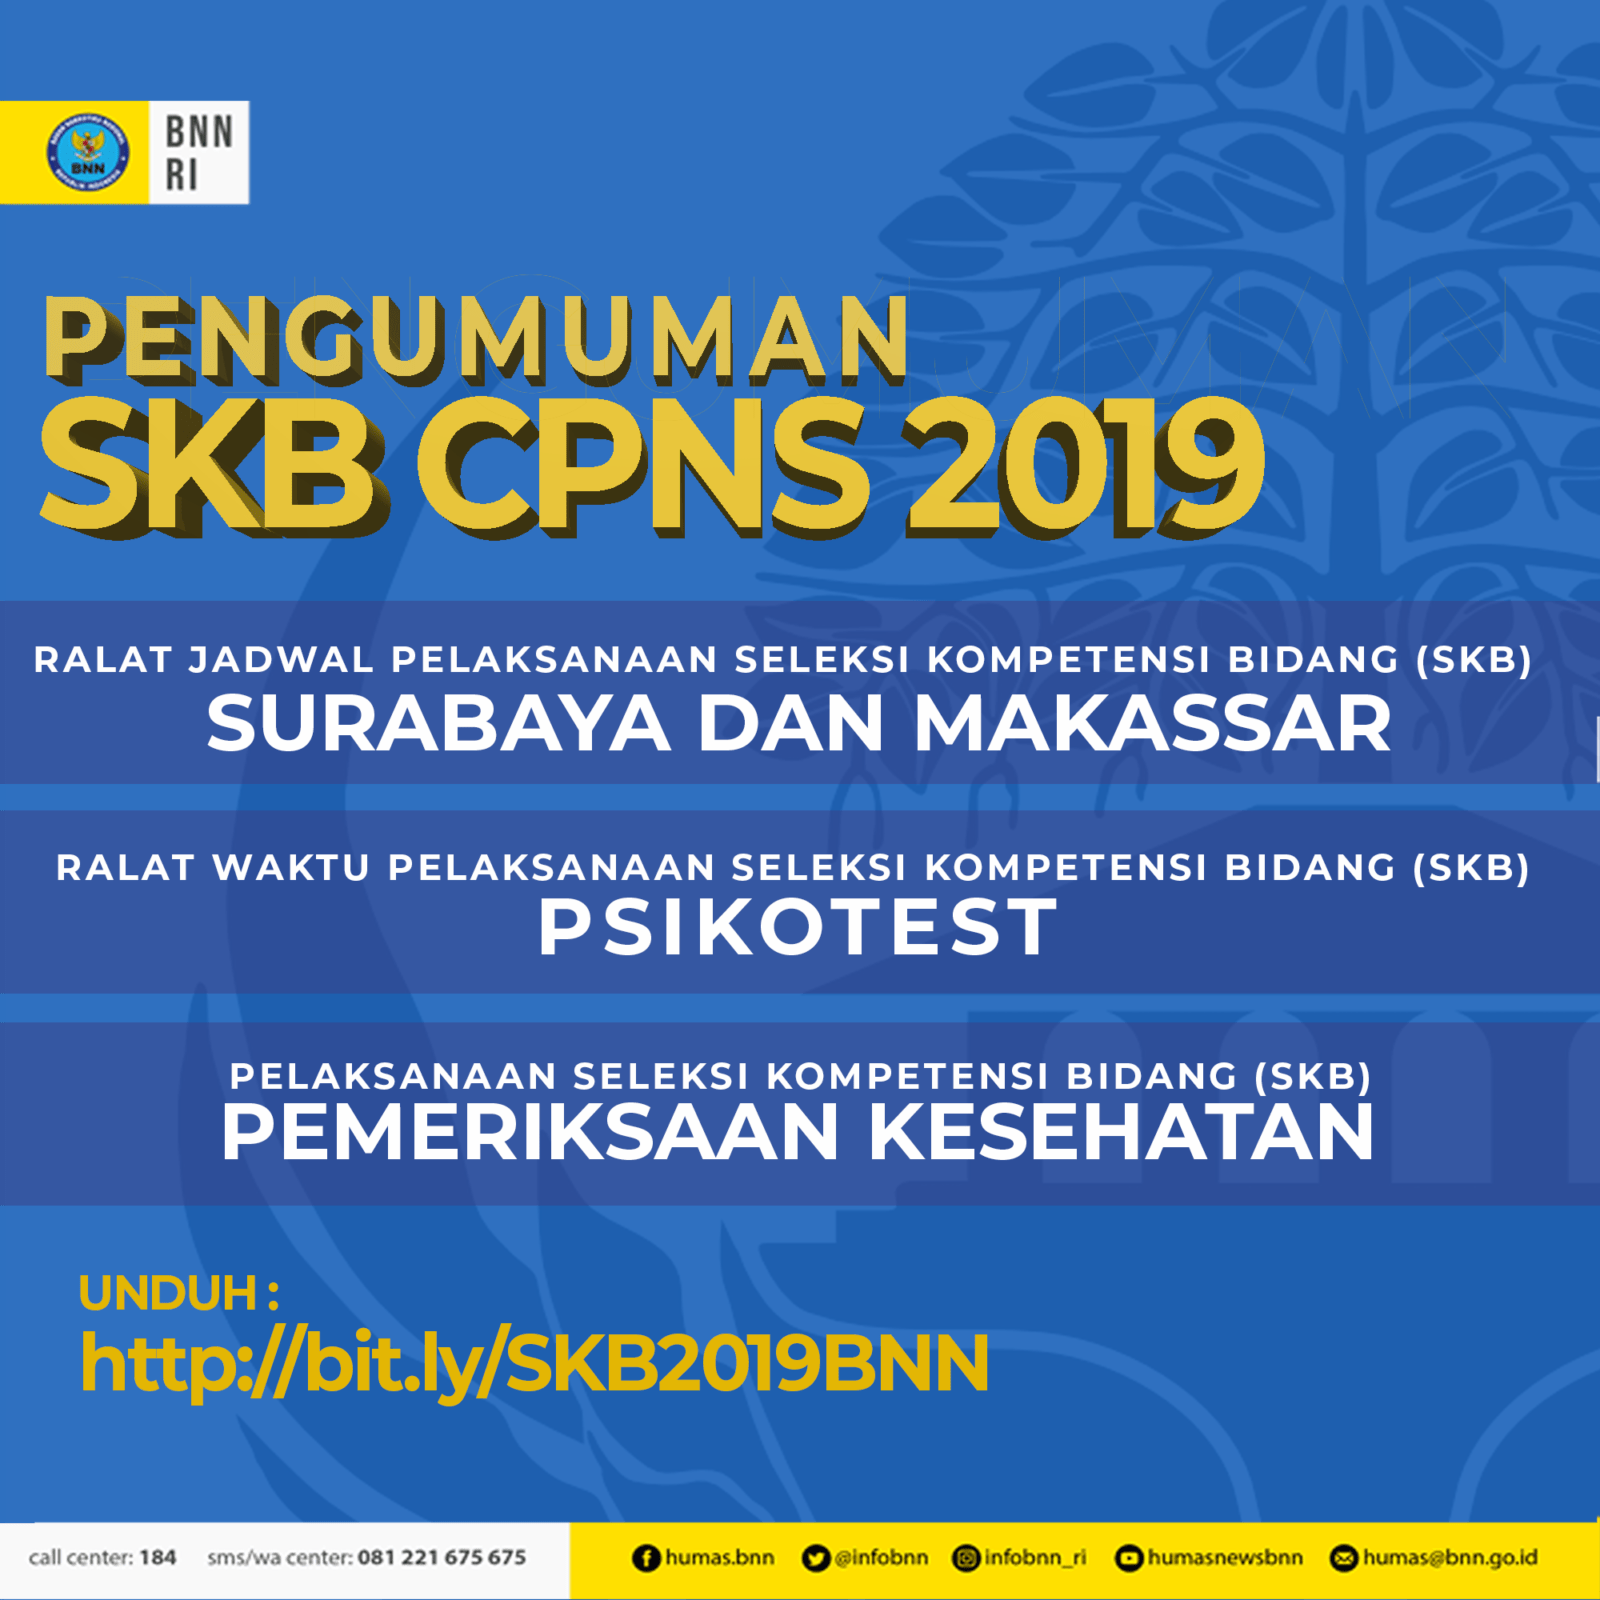 Pengumuman Jadwal Pelaksanaan SKB CPNS 2019 di Surabaya dan Makkasar, Psikotes Serta Pemeriksaan Kesehatan